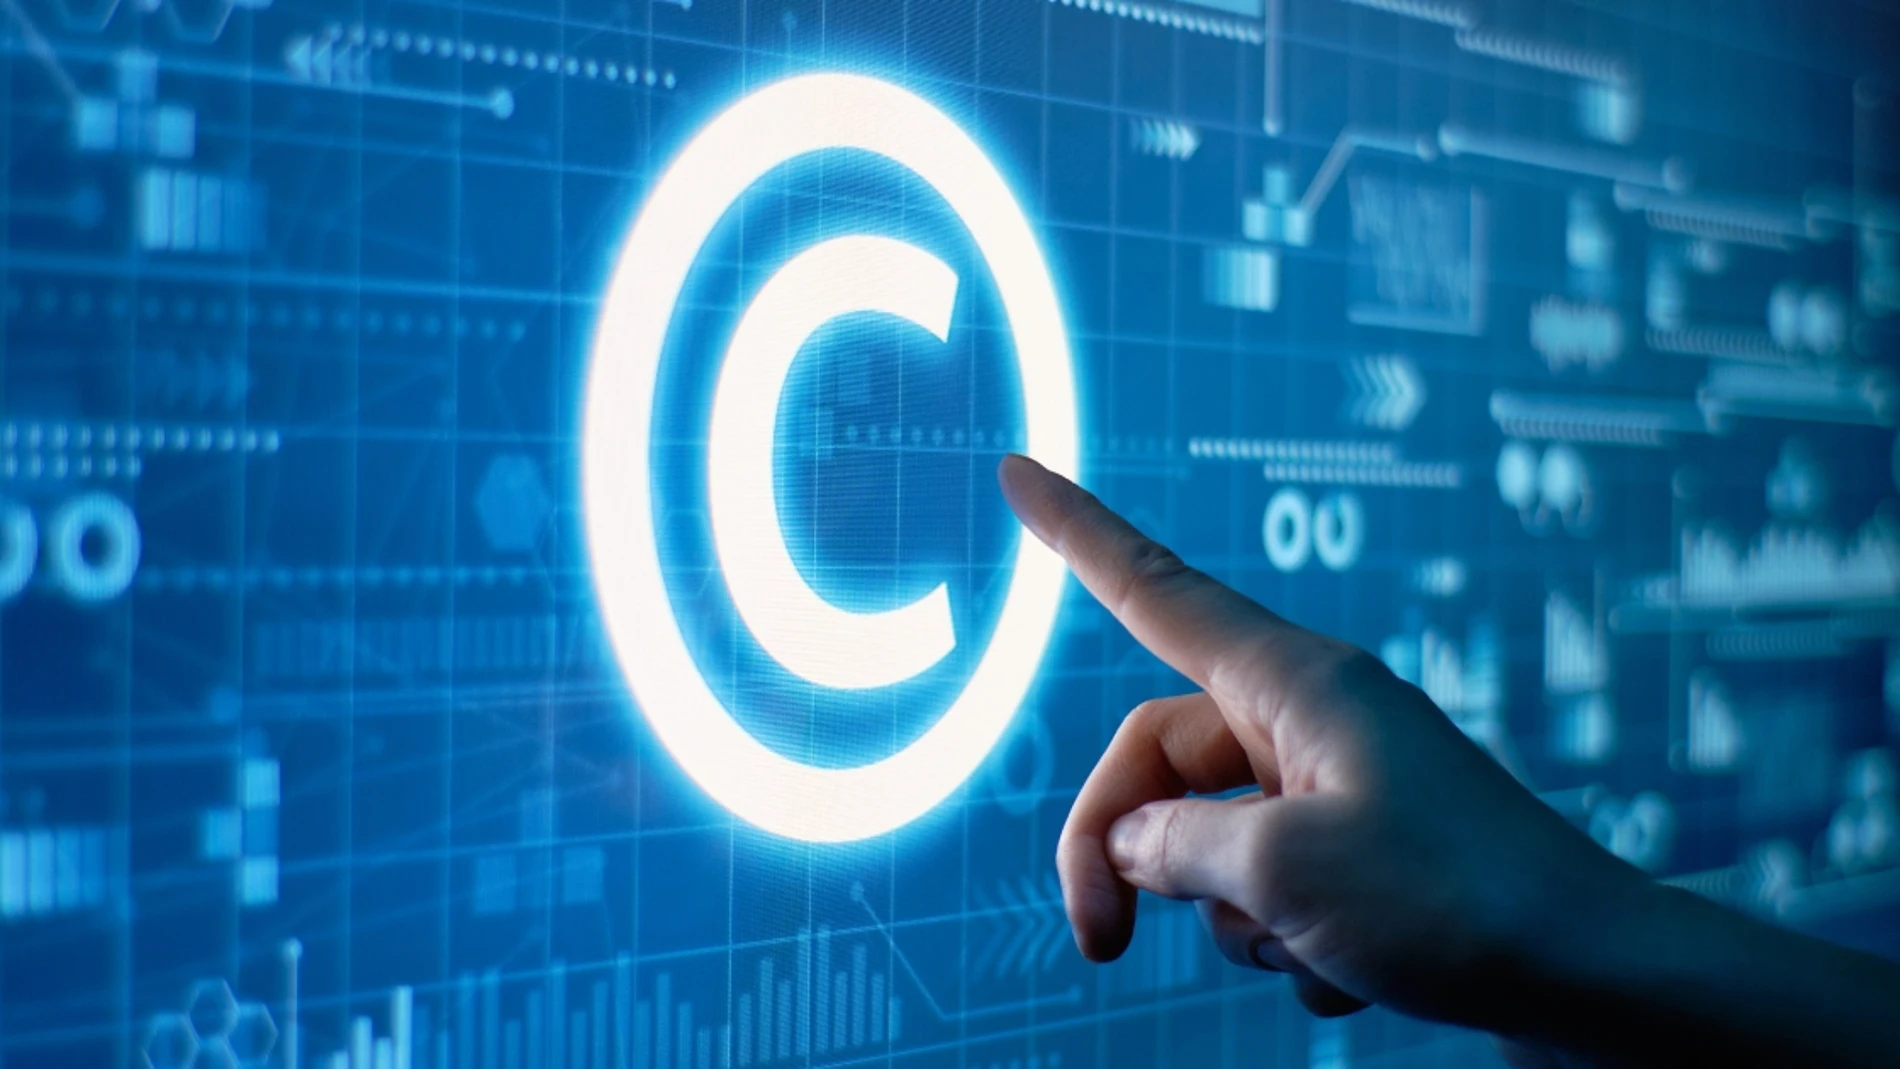 Descubre cómo incorporar el símbolo del Copyright en tus escritos